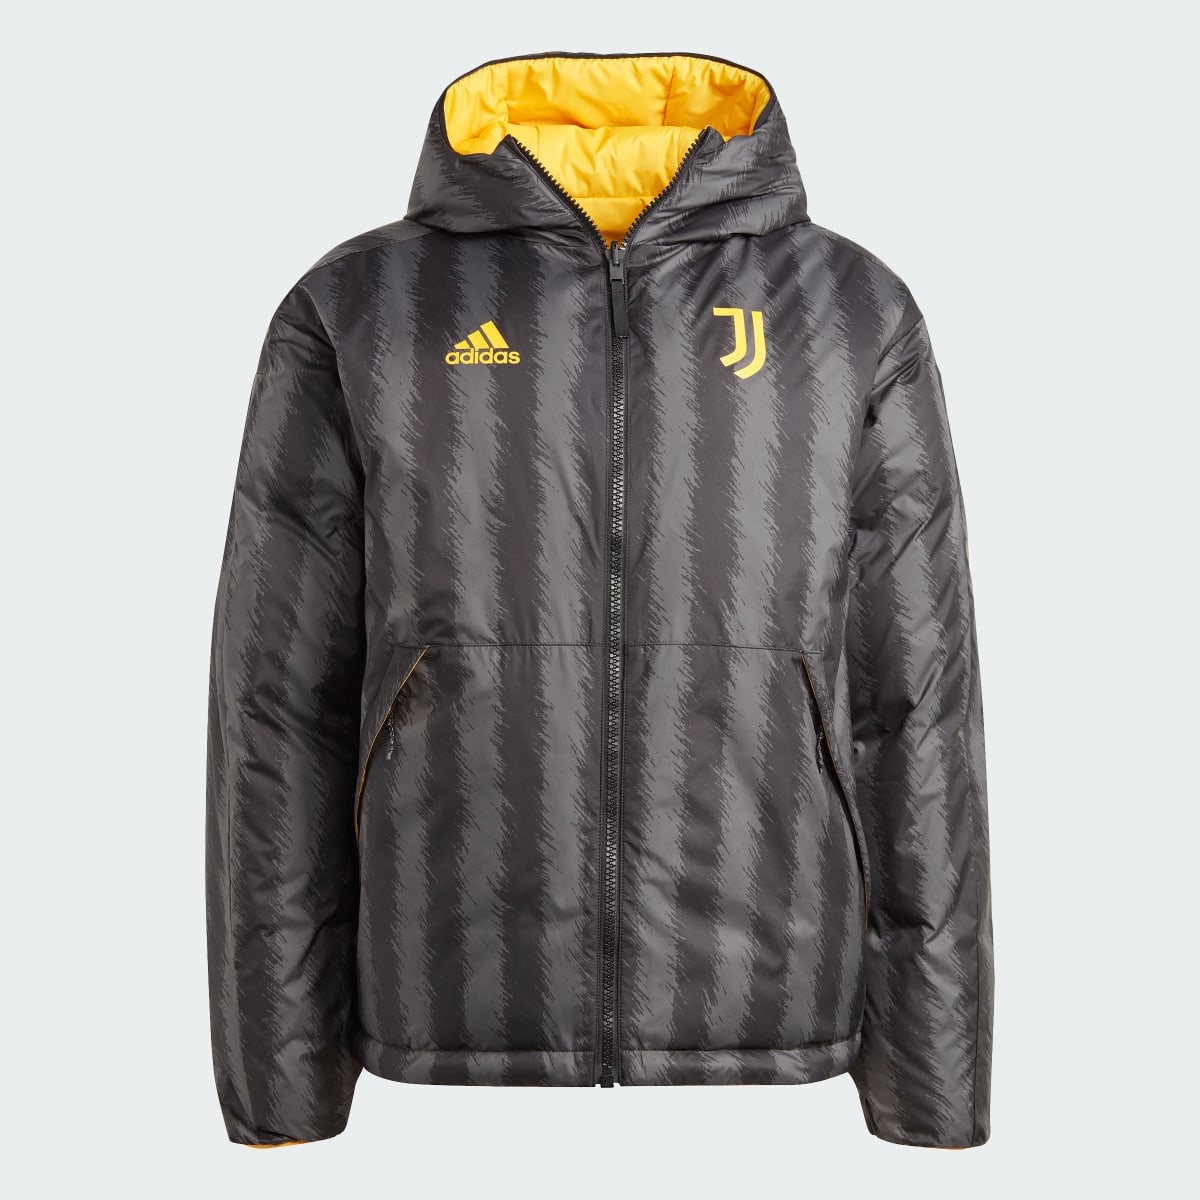 Adidas Juventus DNA Down Jacket. 6